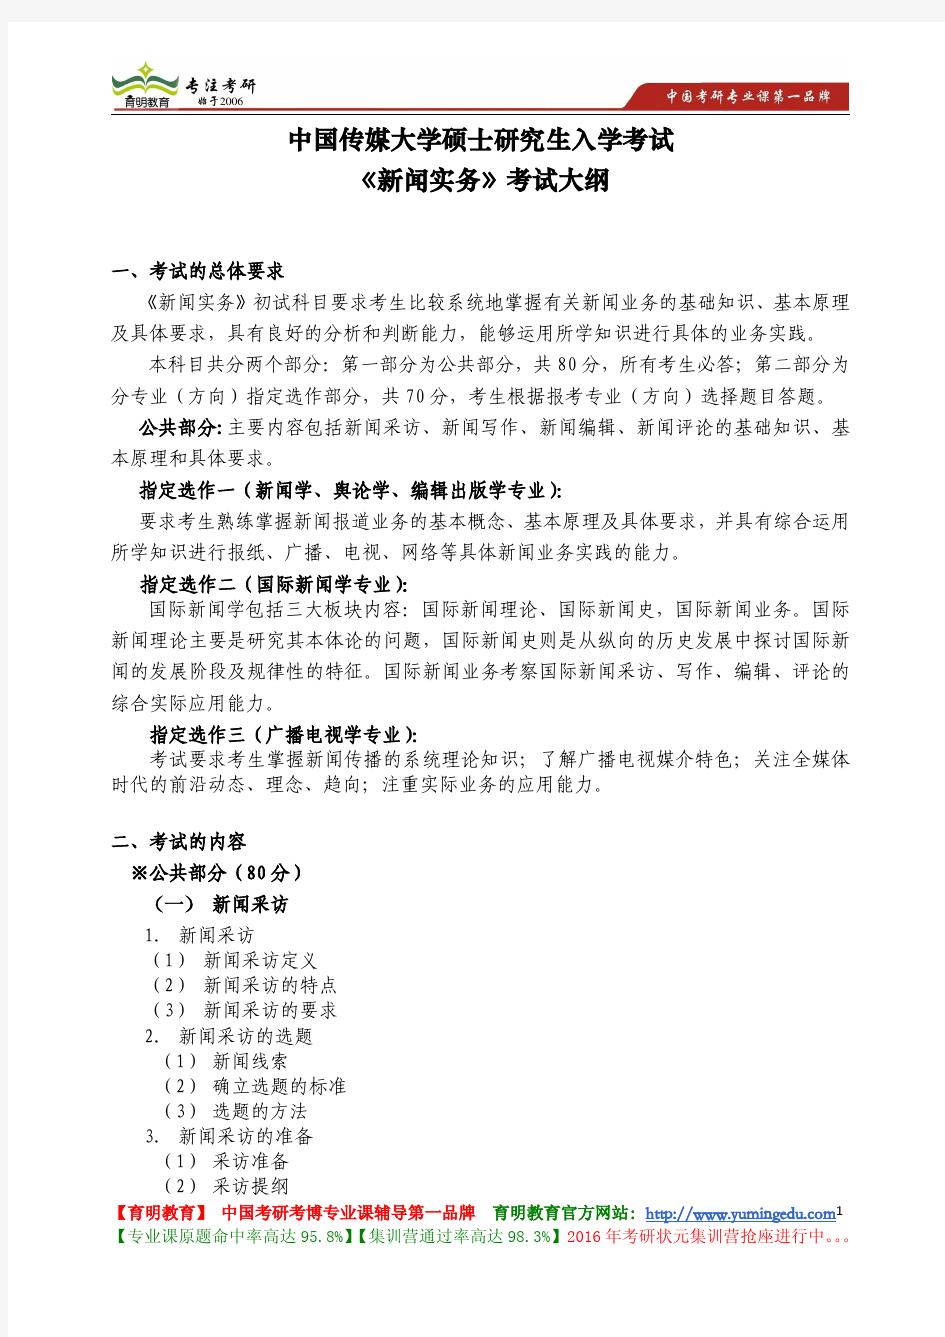 中国传媒大学 815《新闻实务》考试大纲 考试题型 考试内容